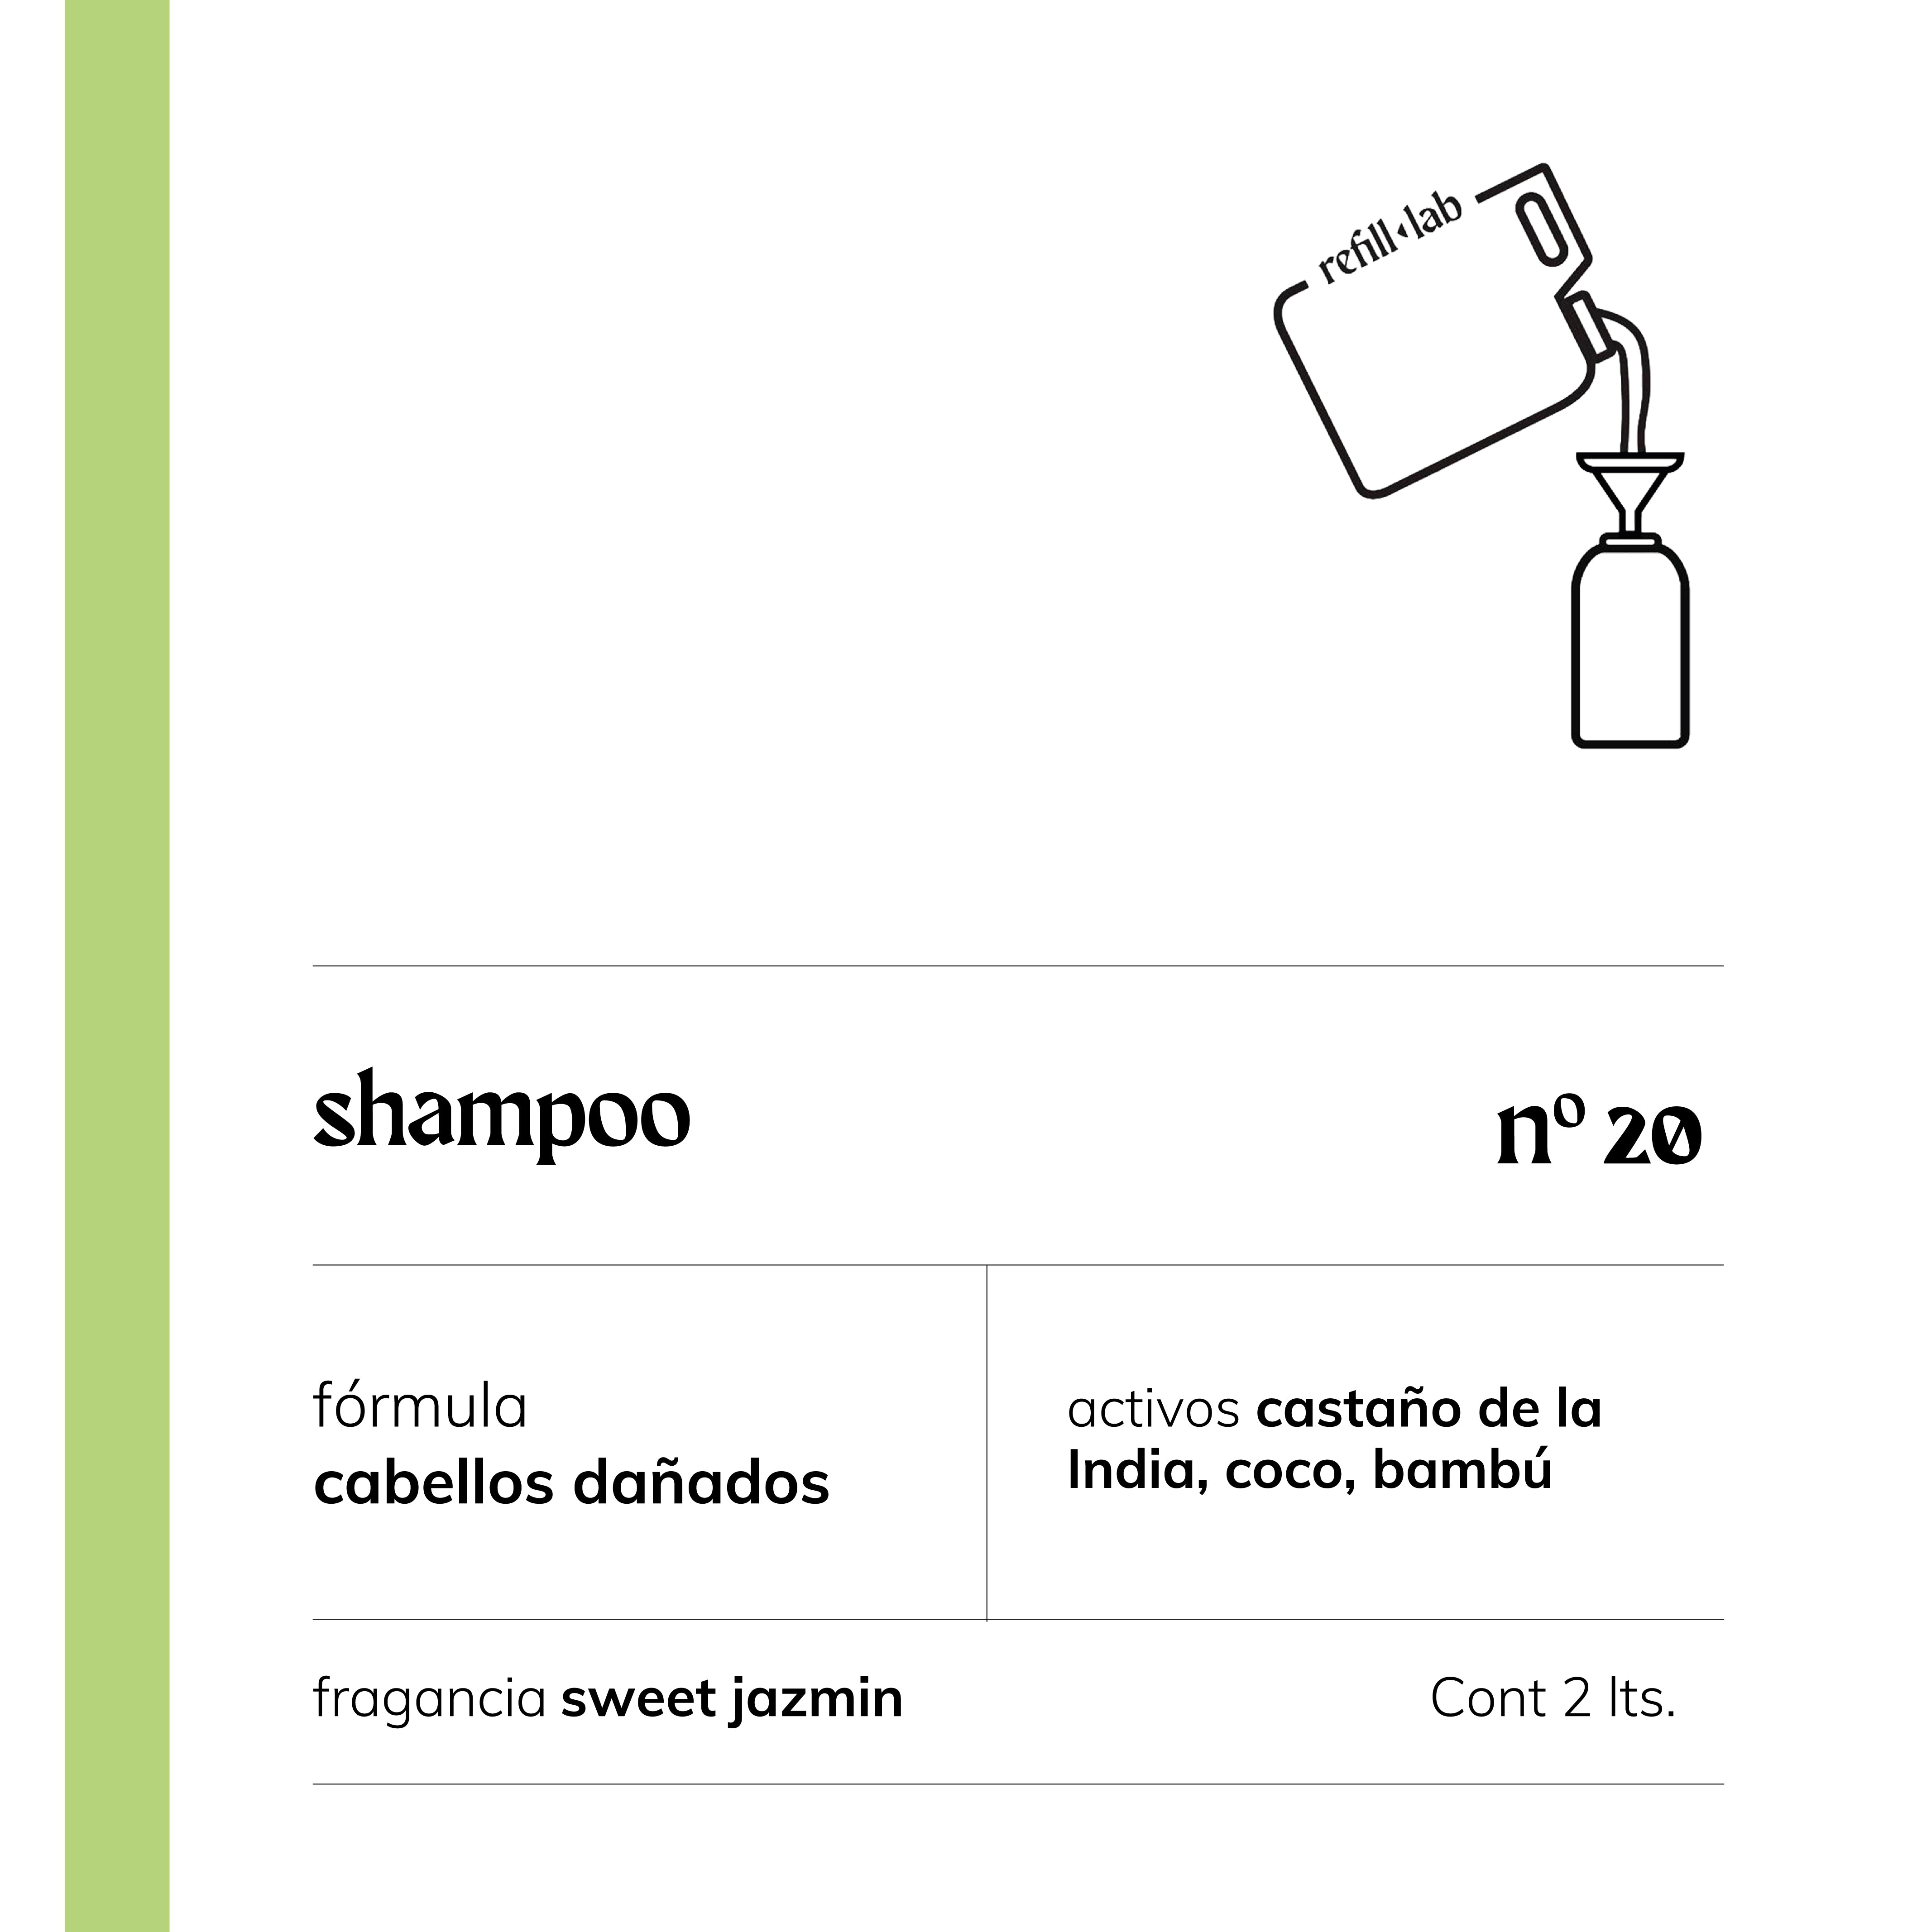 Shampoo sin sulfatos - Cabellos Dañados/Teñidos - Sweet Jazmin - 2 lts.